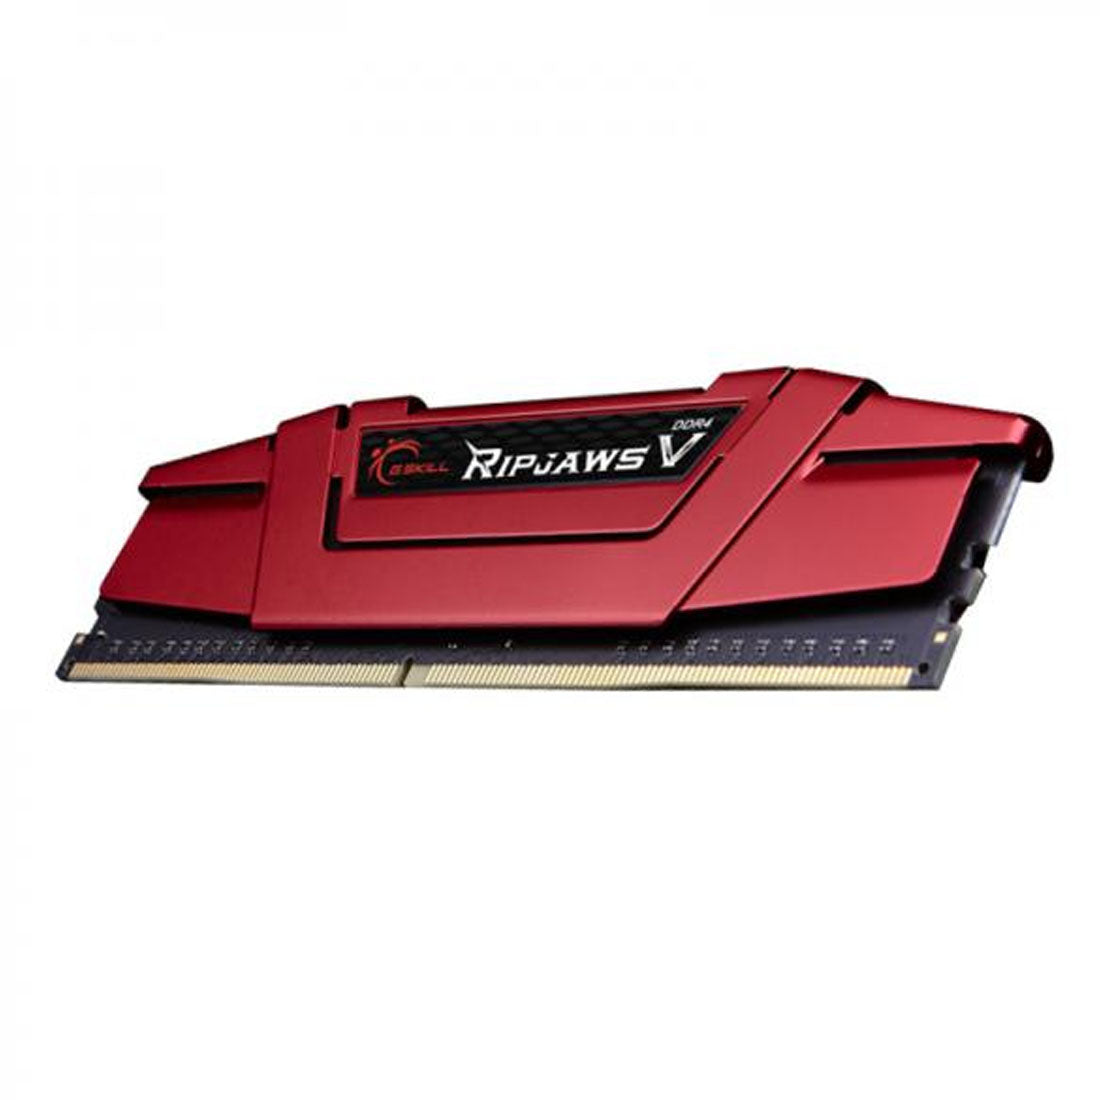 G.SKILL Ripjaws V RAM DDR4 3000MHz Desktop Memory